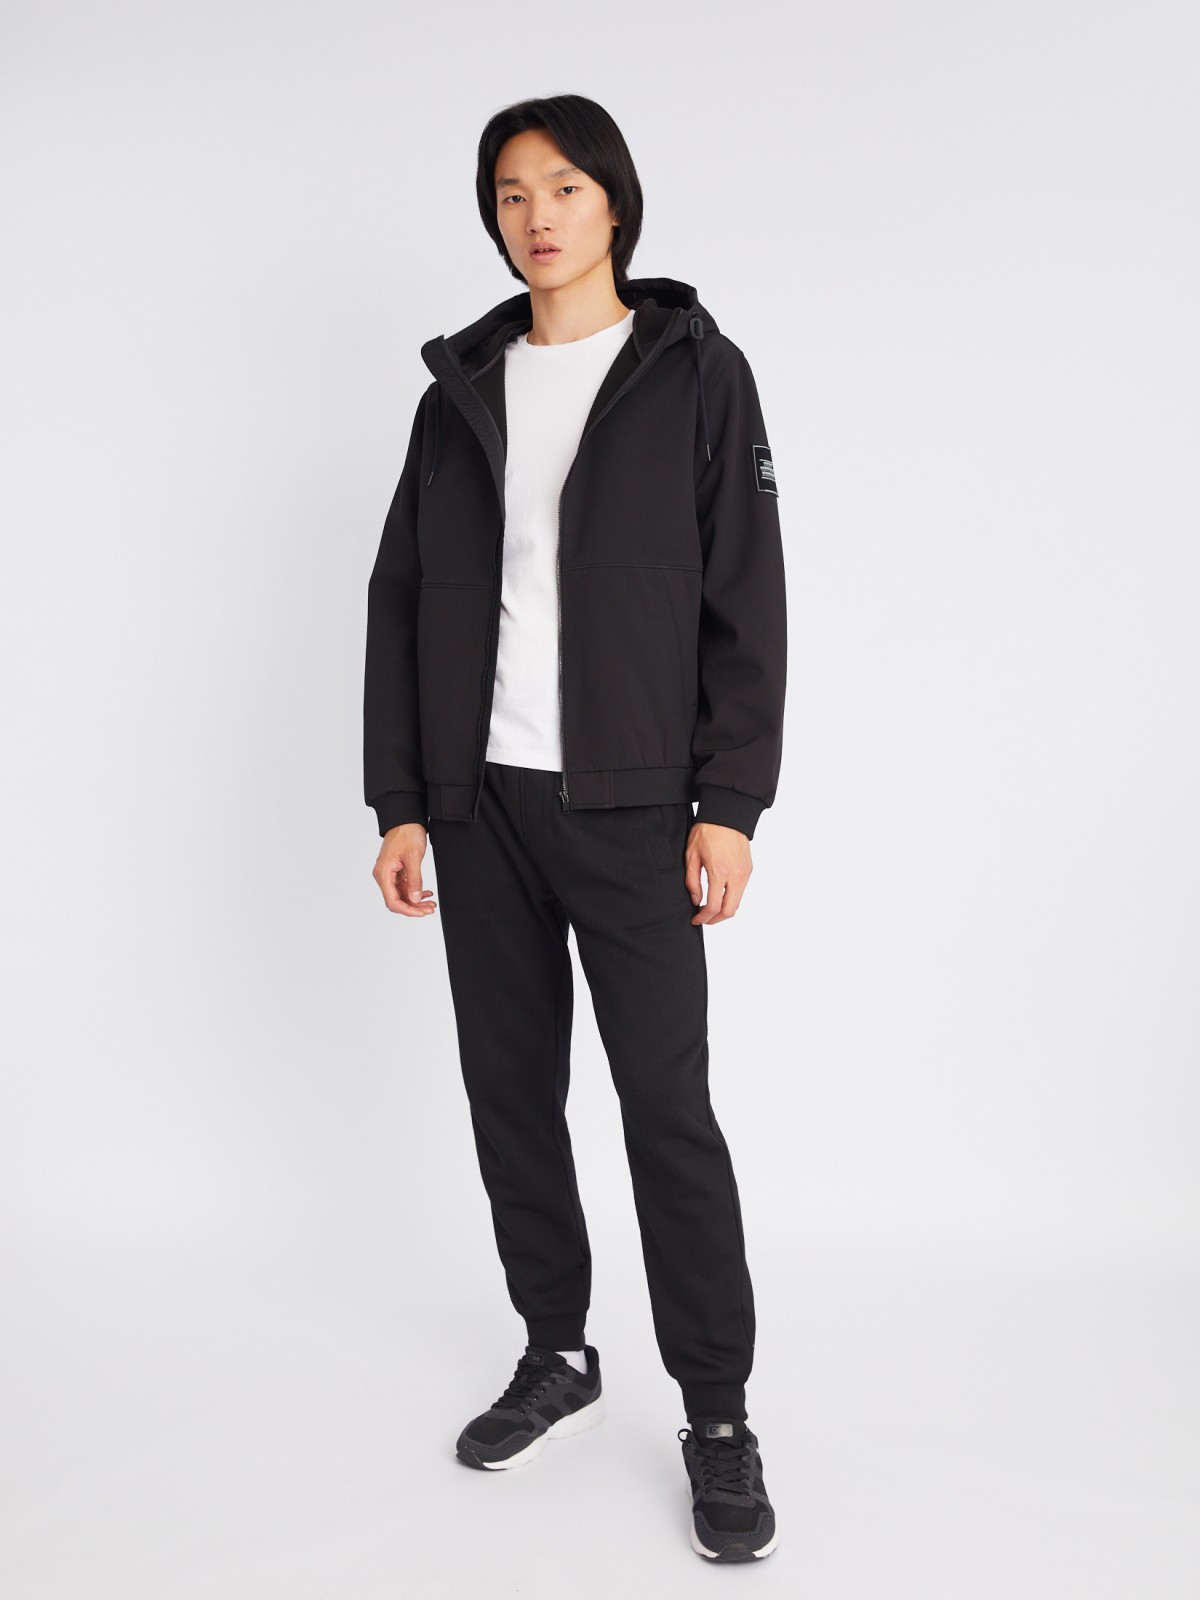 Лёгкая куртка-ветровка без утеплителя с капюшоном zolla 013325602024, цвет черный, размер S - фото 2